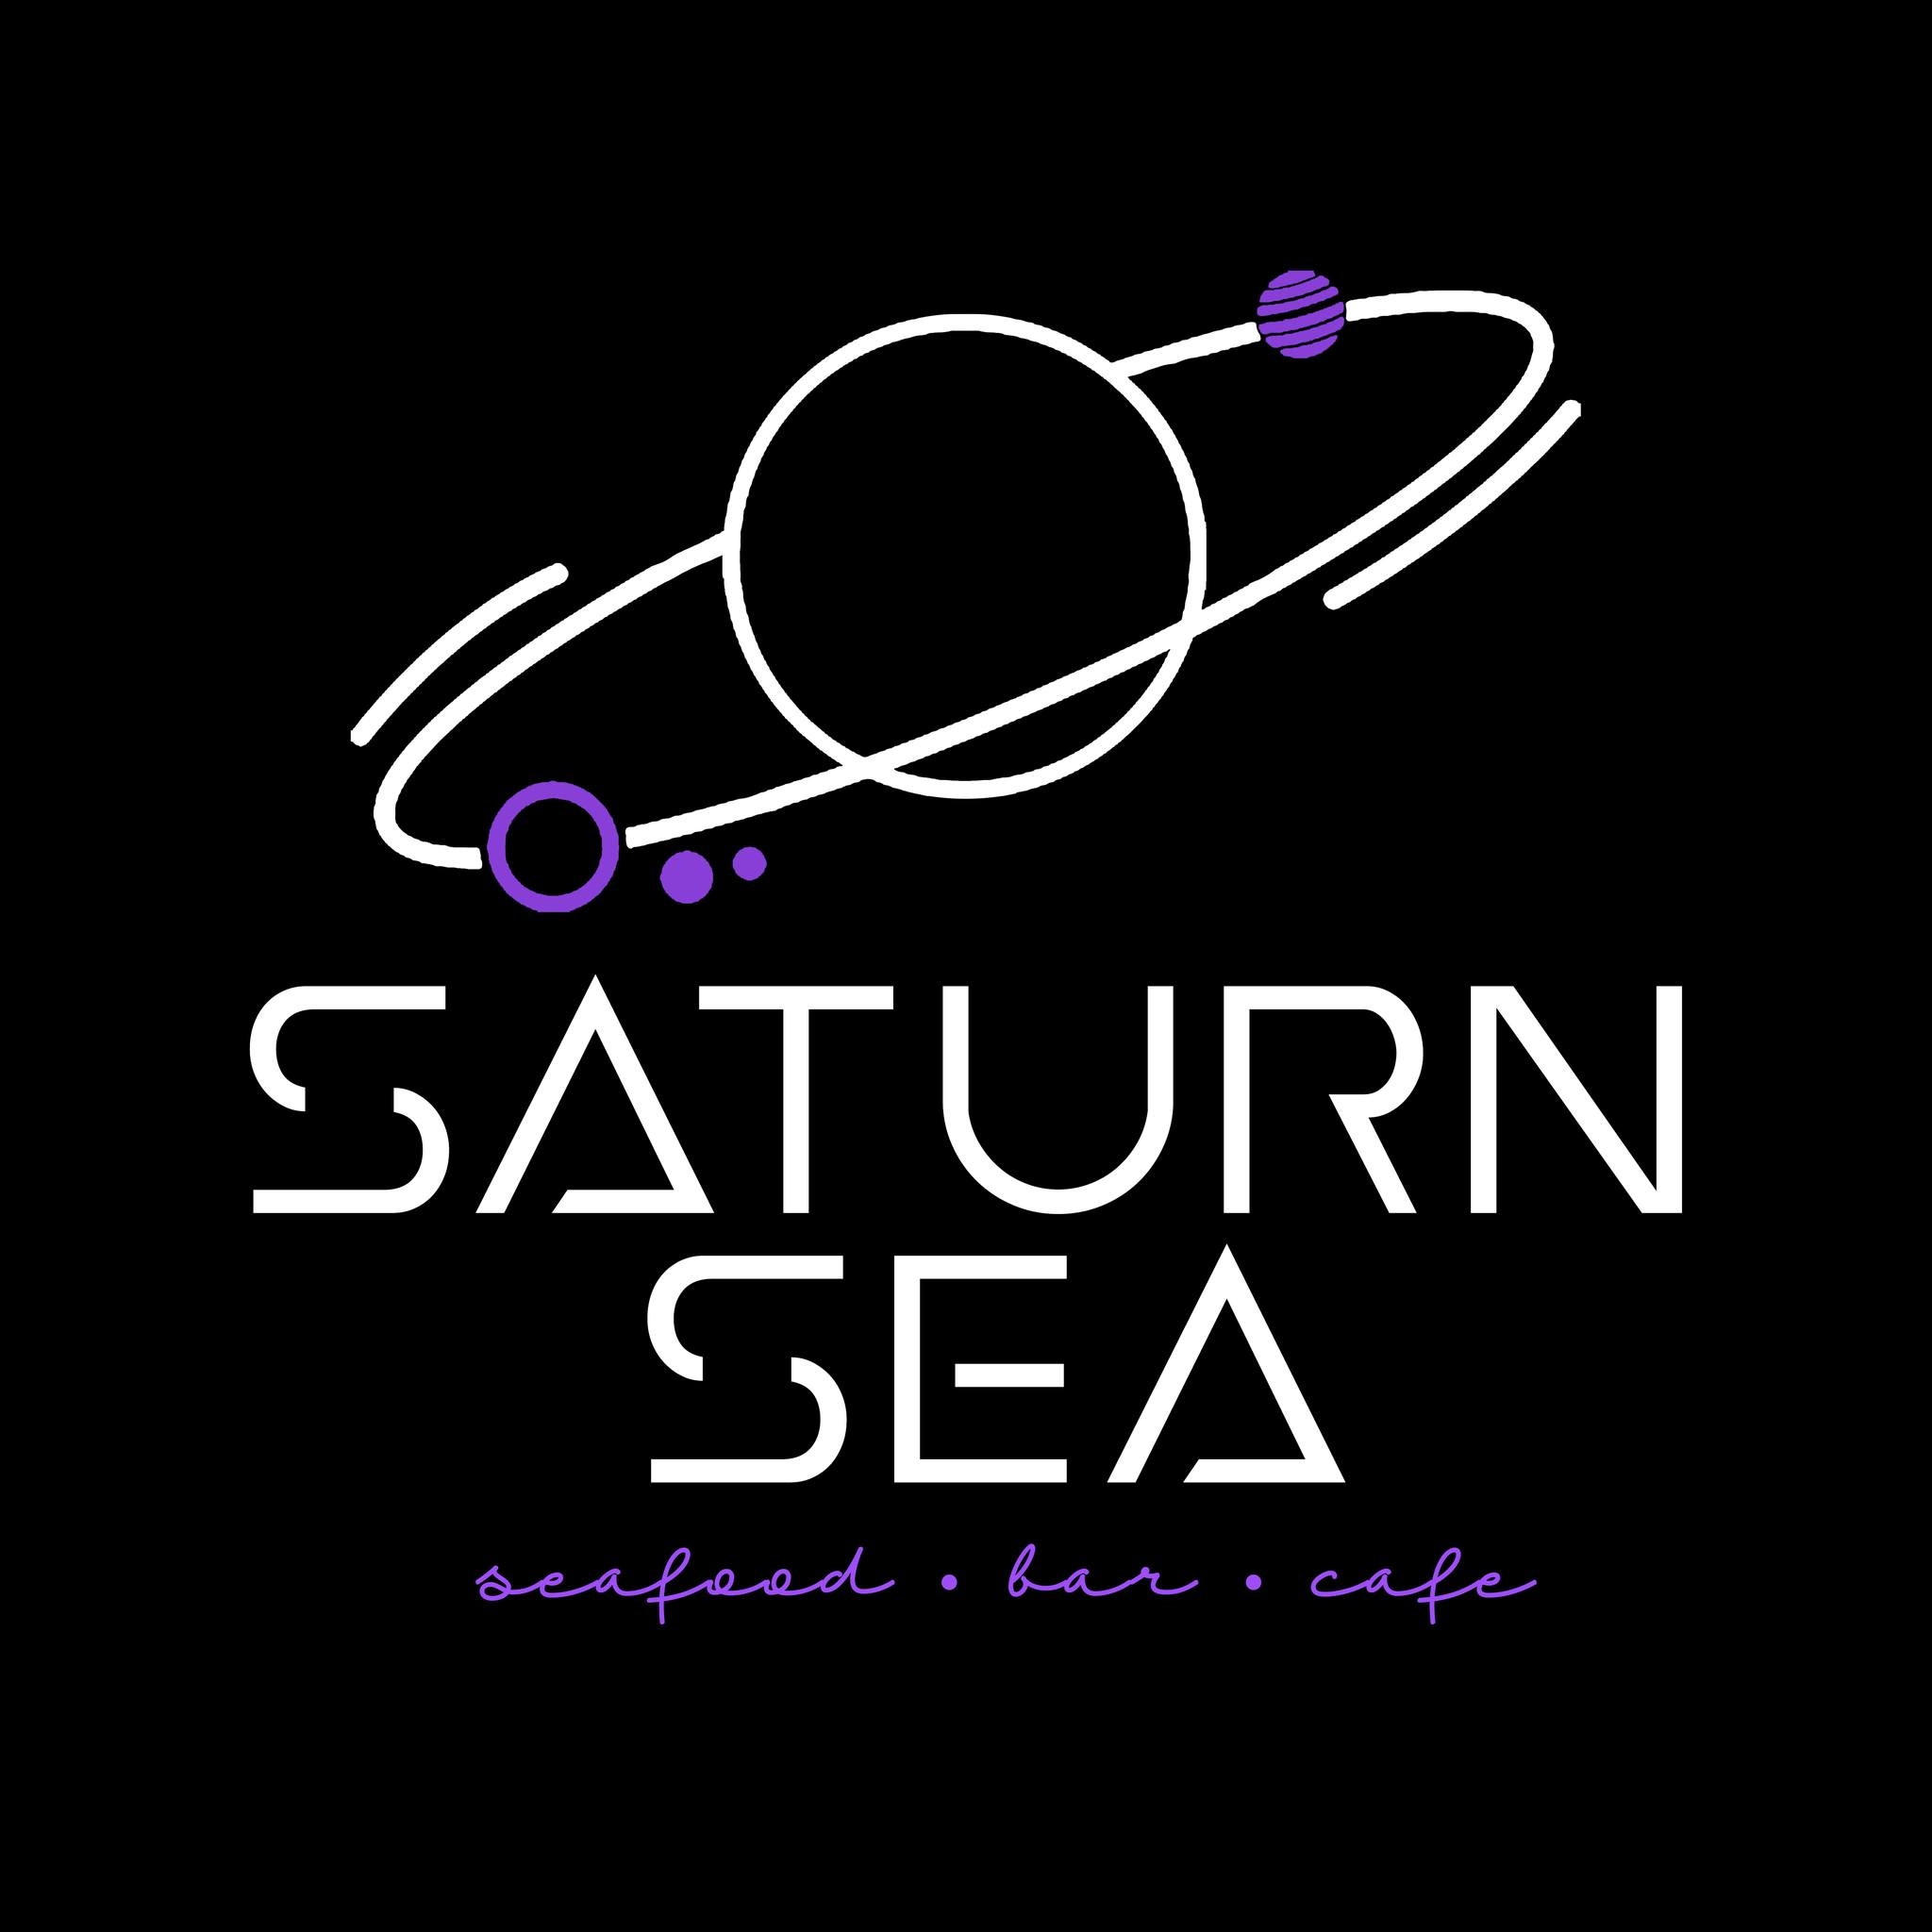  ร้าน Saturn Sea